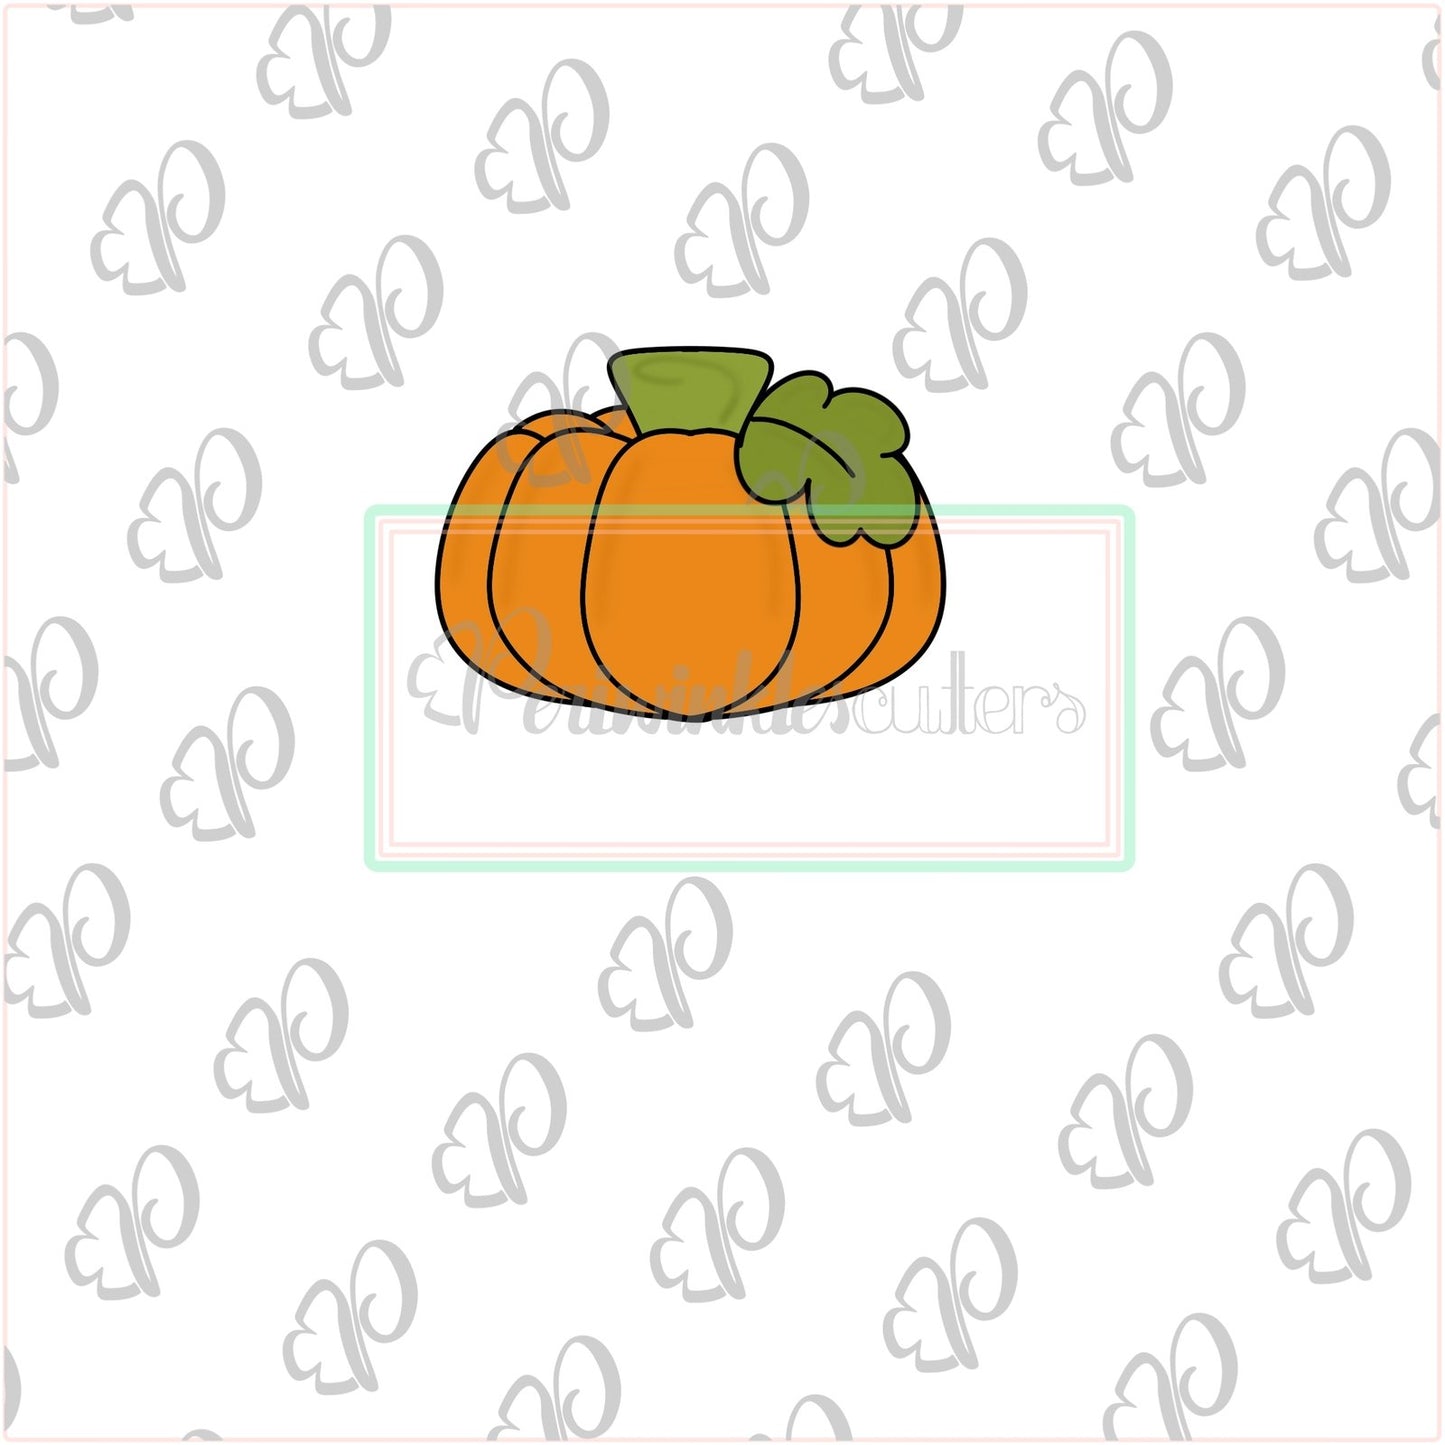 Pumpkins 2019 Cookie Cutter - Pumpkin Cutter - Heart Pumpkin - Periwinkles Cutters